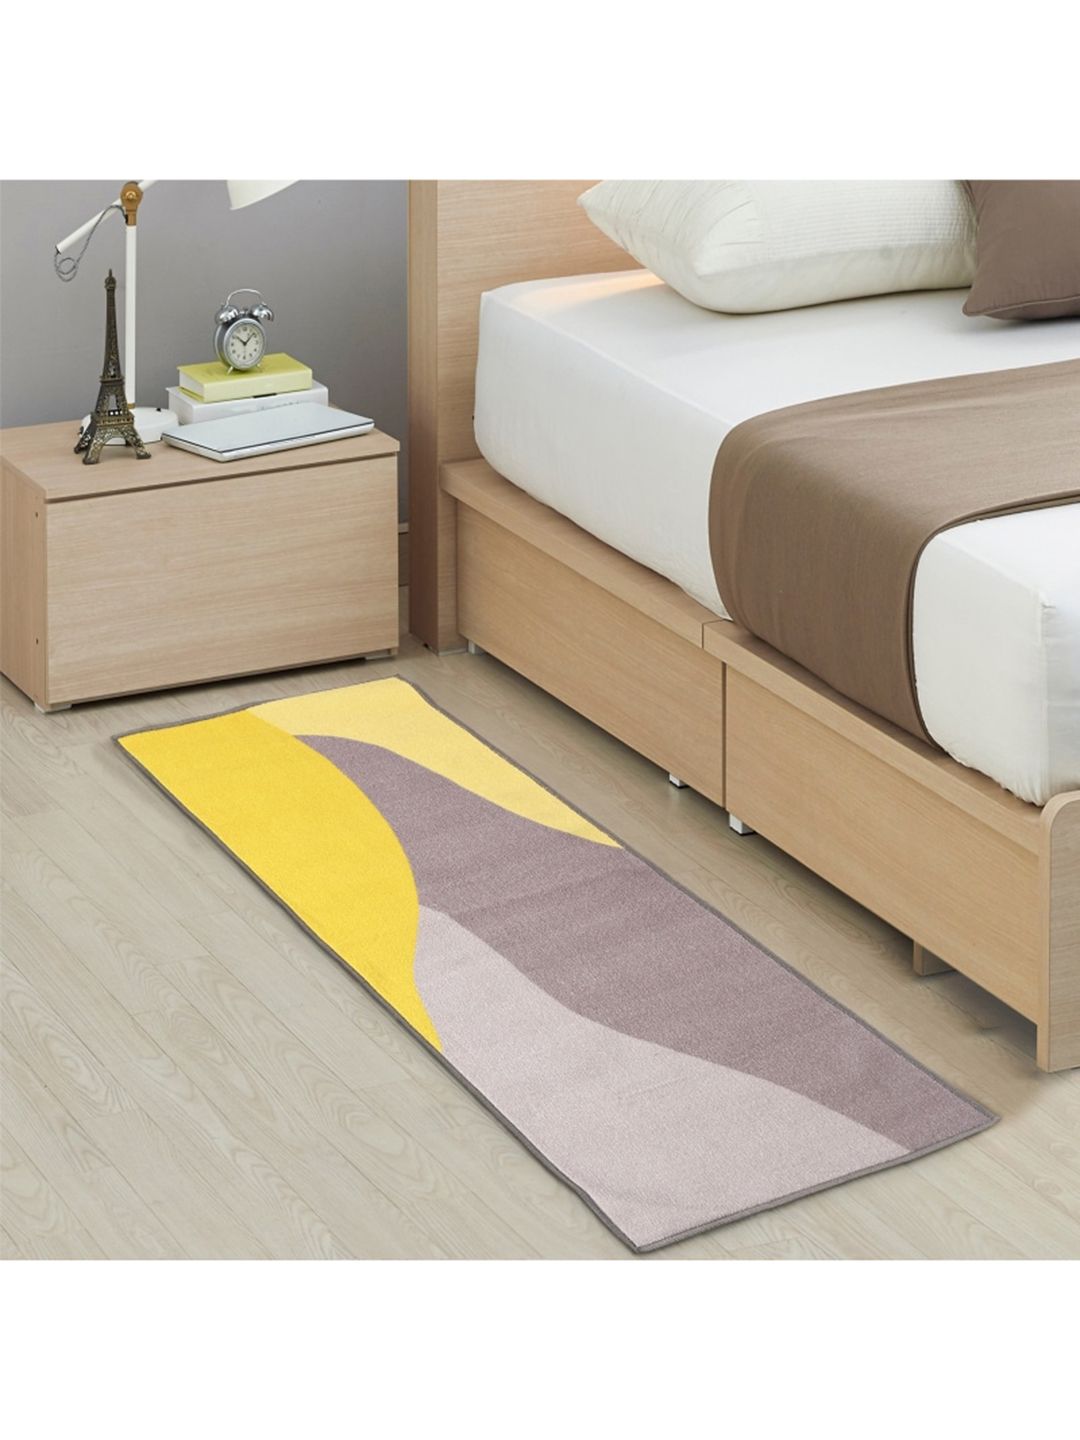 URBAN SPACE Grey & Mustard Yellow Textured Rectangular Carpet Price in India